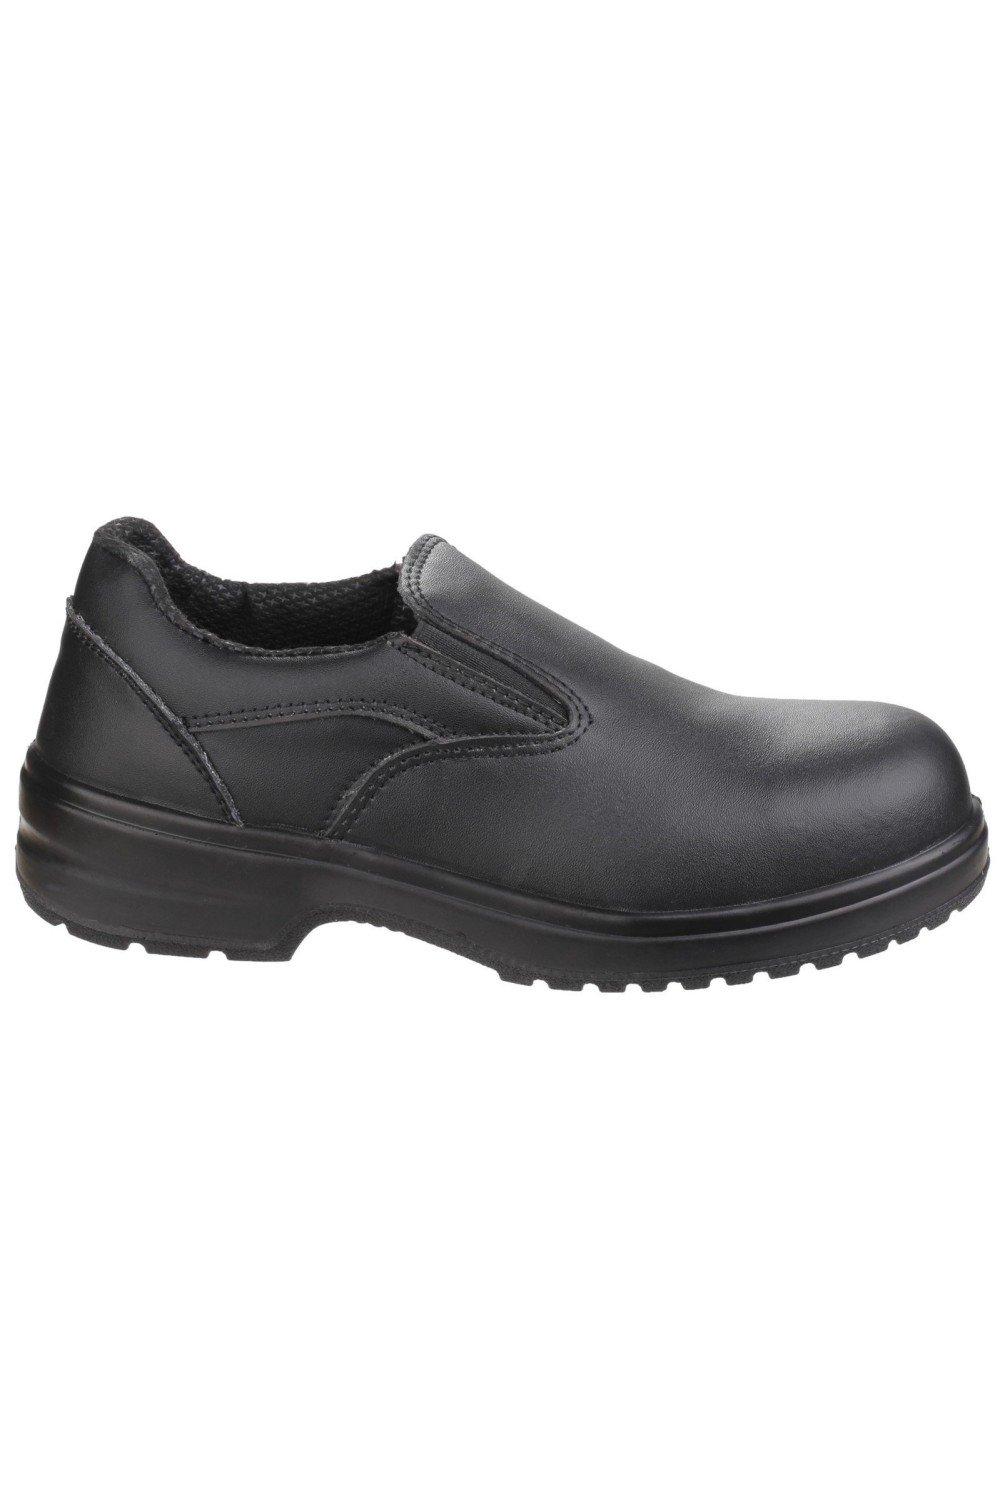 цена Безопасность FS94C Защитная обувь без шнуровки Amblers, черный